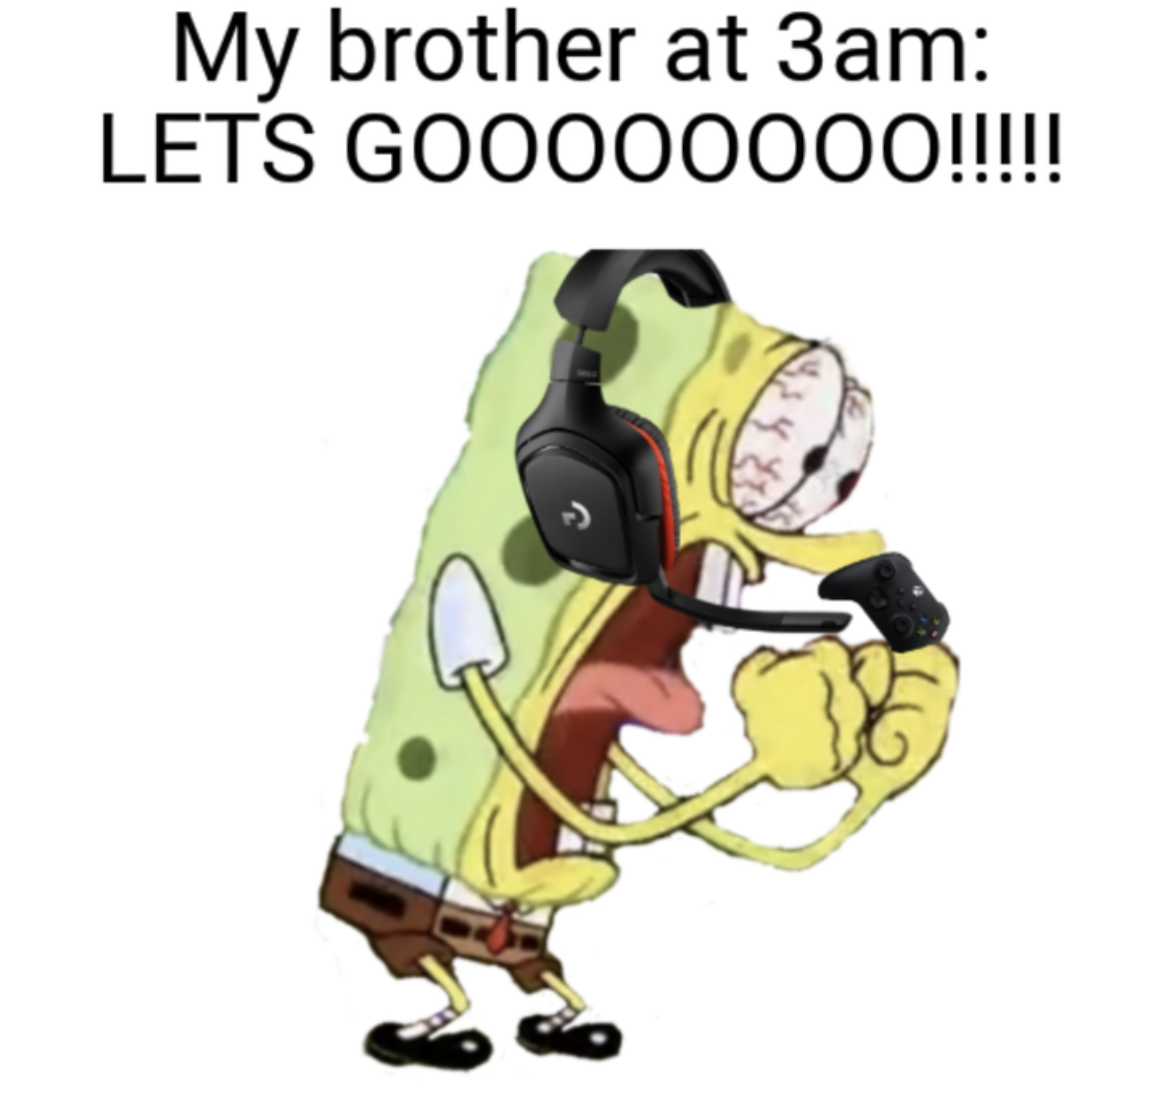 Gaming memes - cartoon - My brother at 3am Lets GOOO00000!!!!!